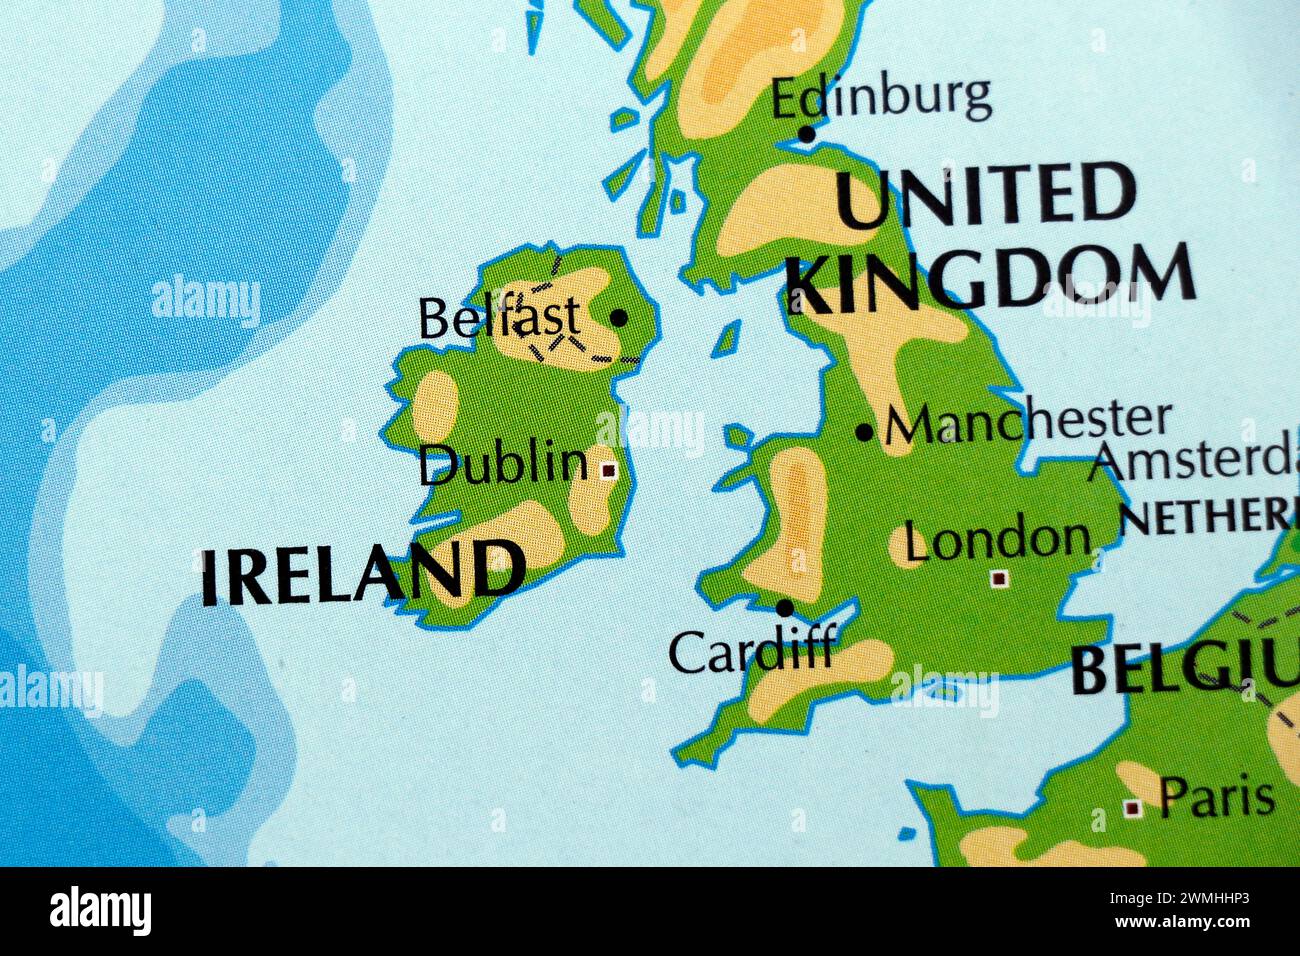 Weltkarte von europa, england und irland, die an Länder grenzt Stockfoto